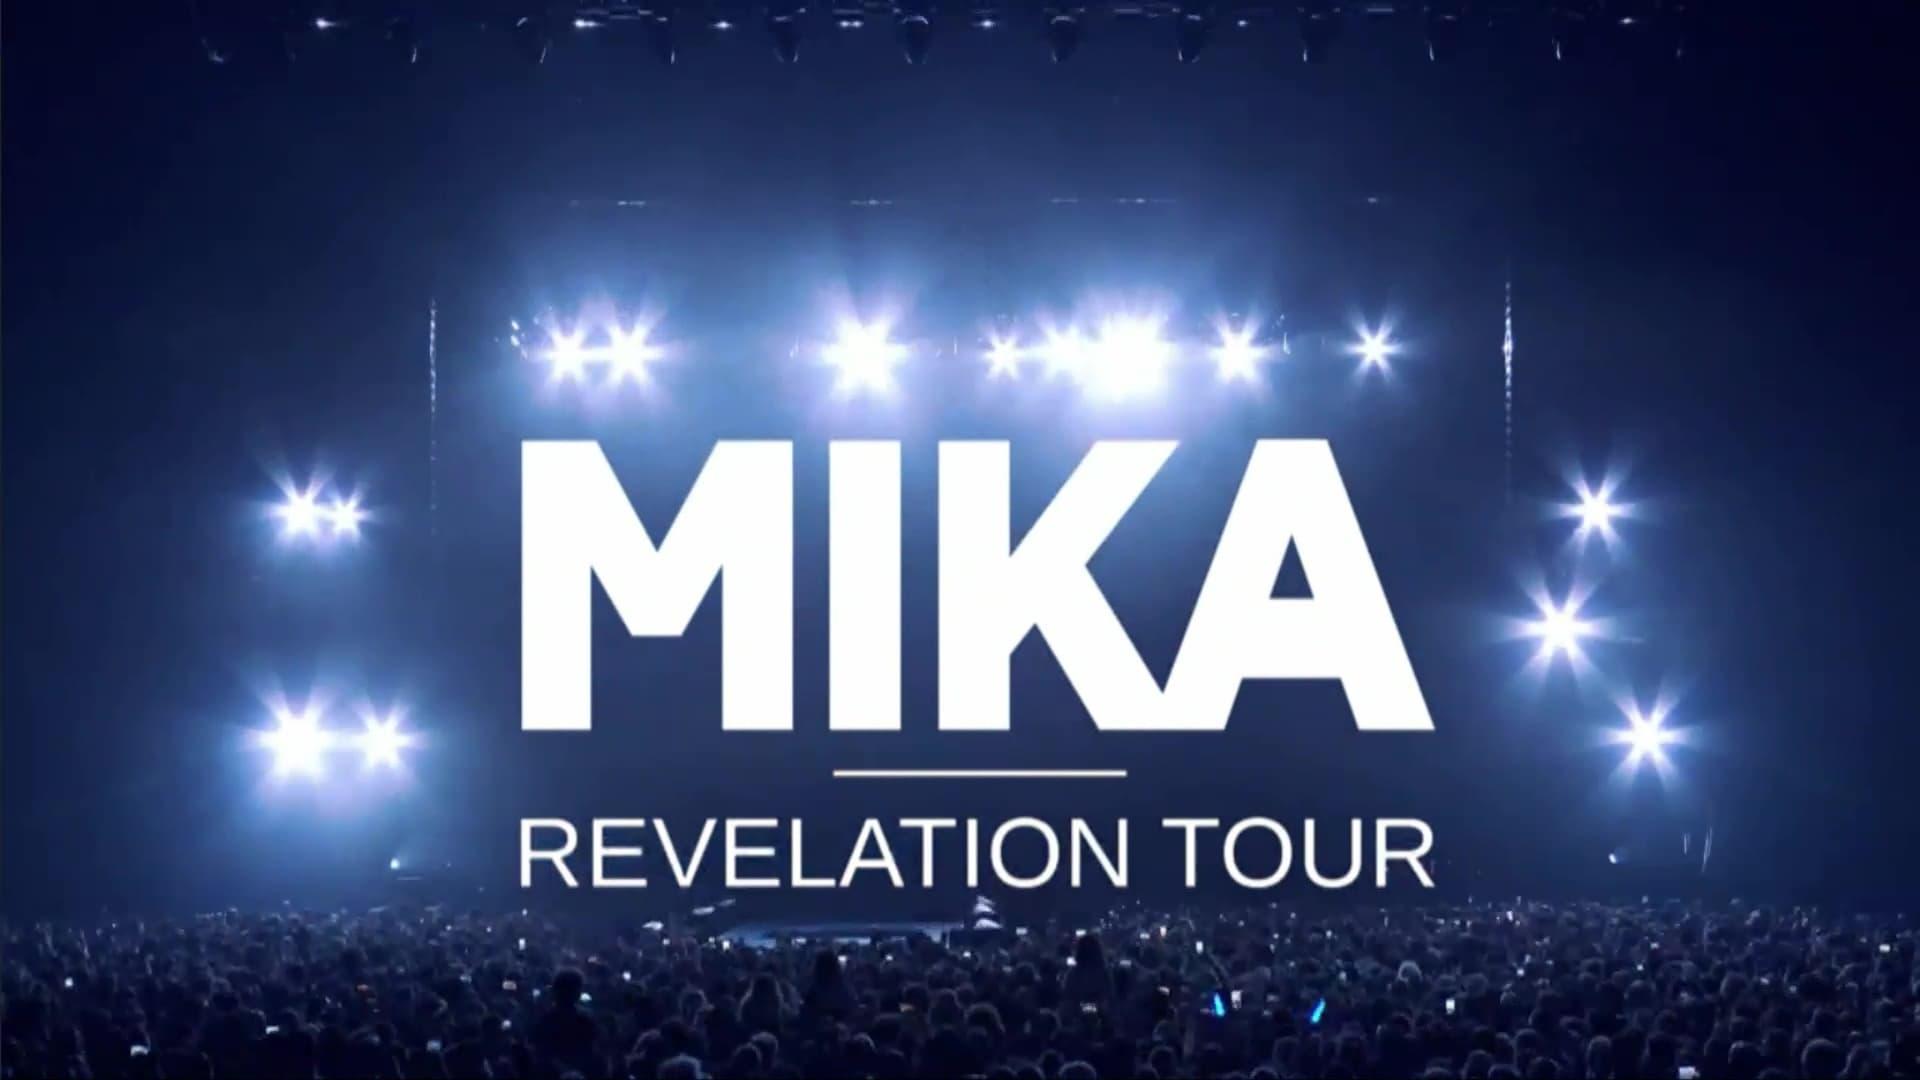 Mika : Revelation Tour backdrop